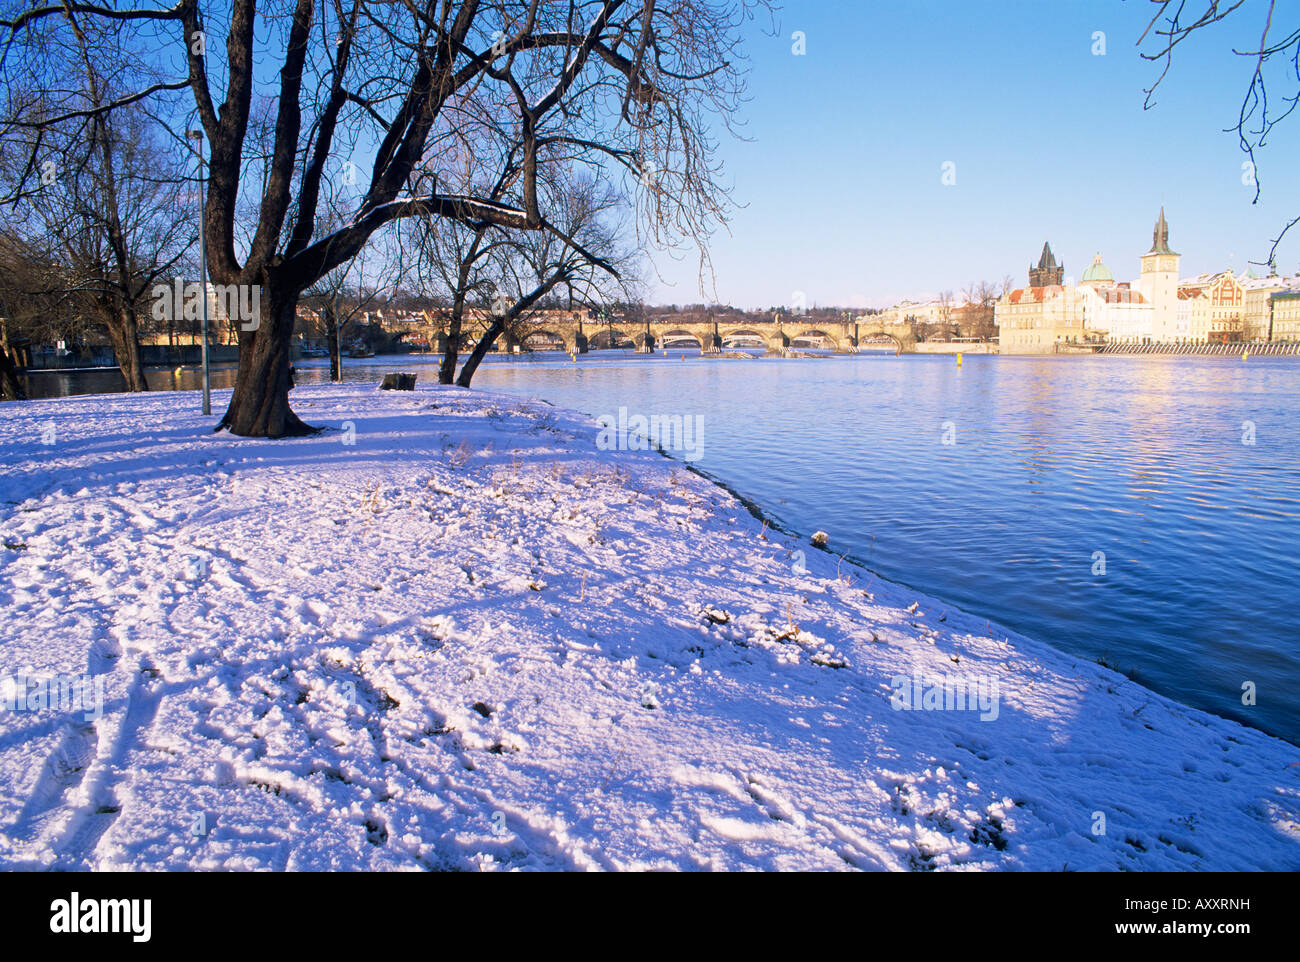 Strelecky Island, il fiume Moldava e la Città Vecchia in inverno, Mala Strana, Praga, Repubblica Ceca, Europa Foto Stock